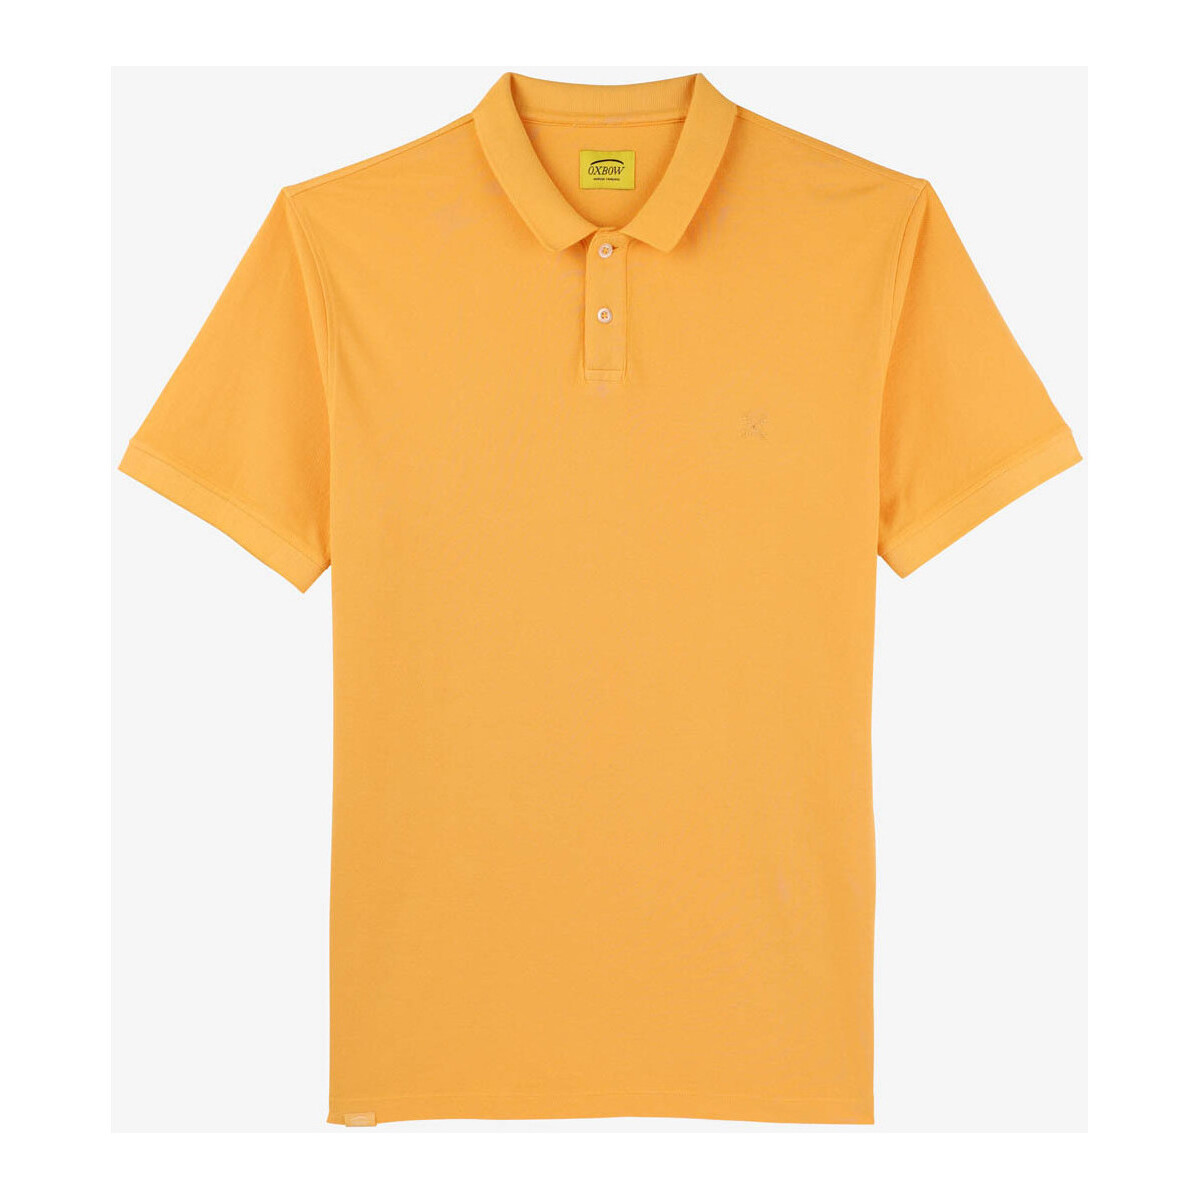 Vêtements Homme Polos manches courtes Oxbow Polo manches courtes piqué surteint NASDAK Orange